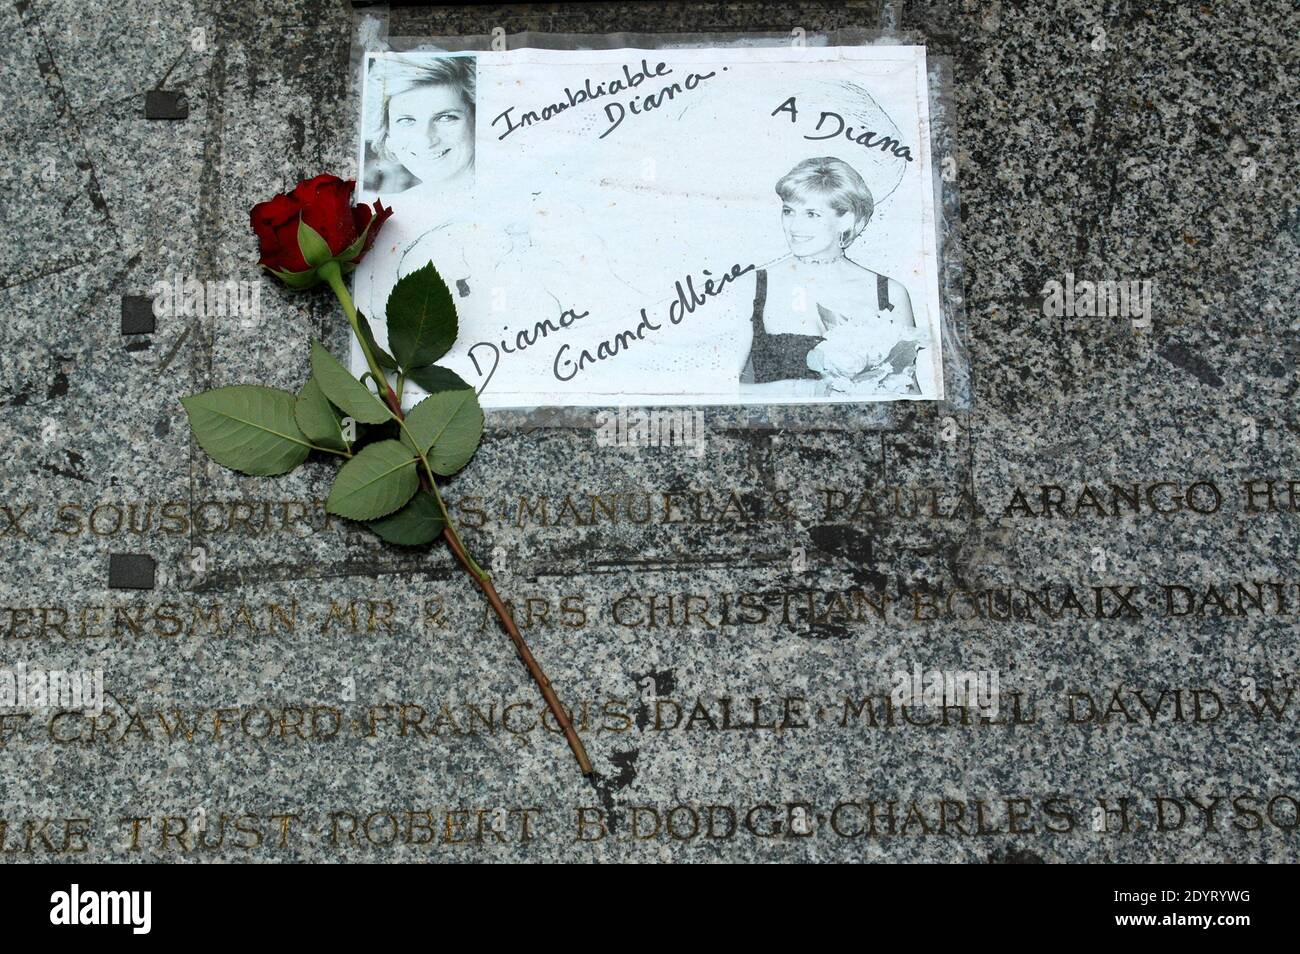 Vista della fiamma della libertà, che è diventata un memoriale non ufficiale della principessa Diana, è raffigurata nel 16 ° anniversario della sua morte, vicino al sito del crash auto nel tunnel Pont de l'Alma, a Parigi, Francia il 26 agosto 2013. Foto di Alain Apaydin/ABACAPRESS.COM Foto Stock